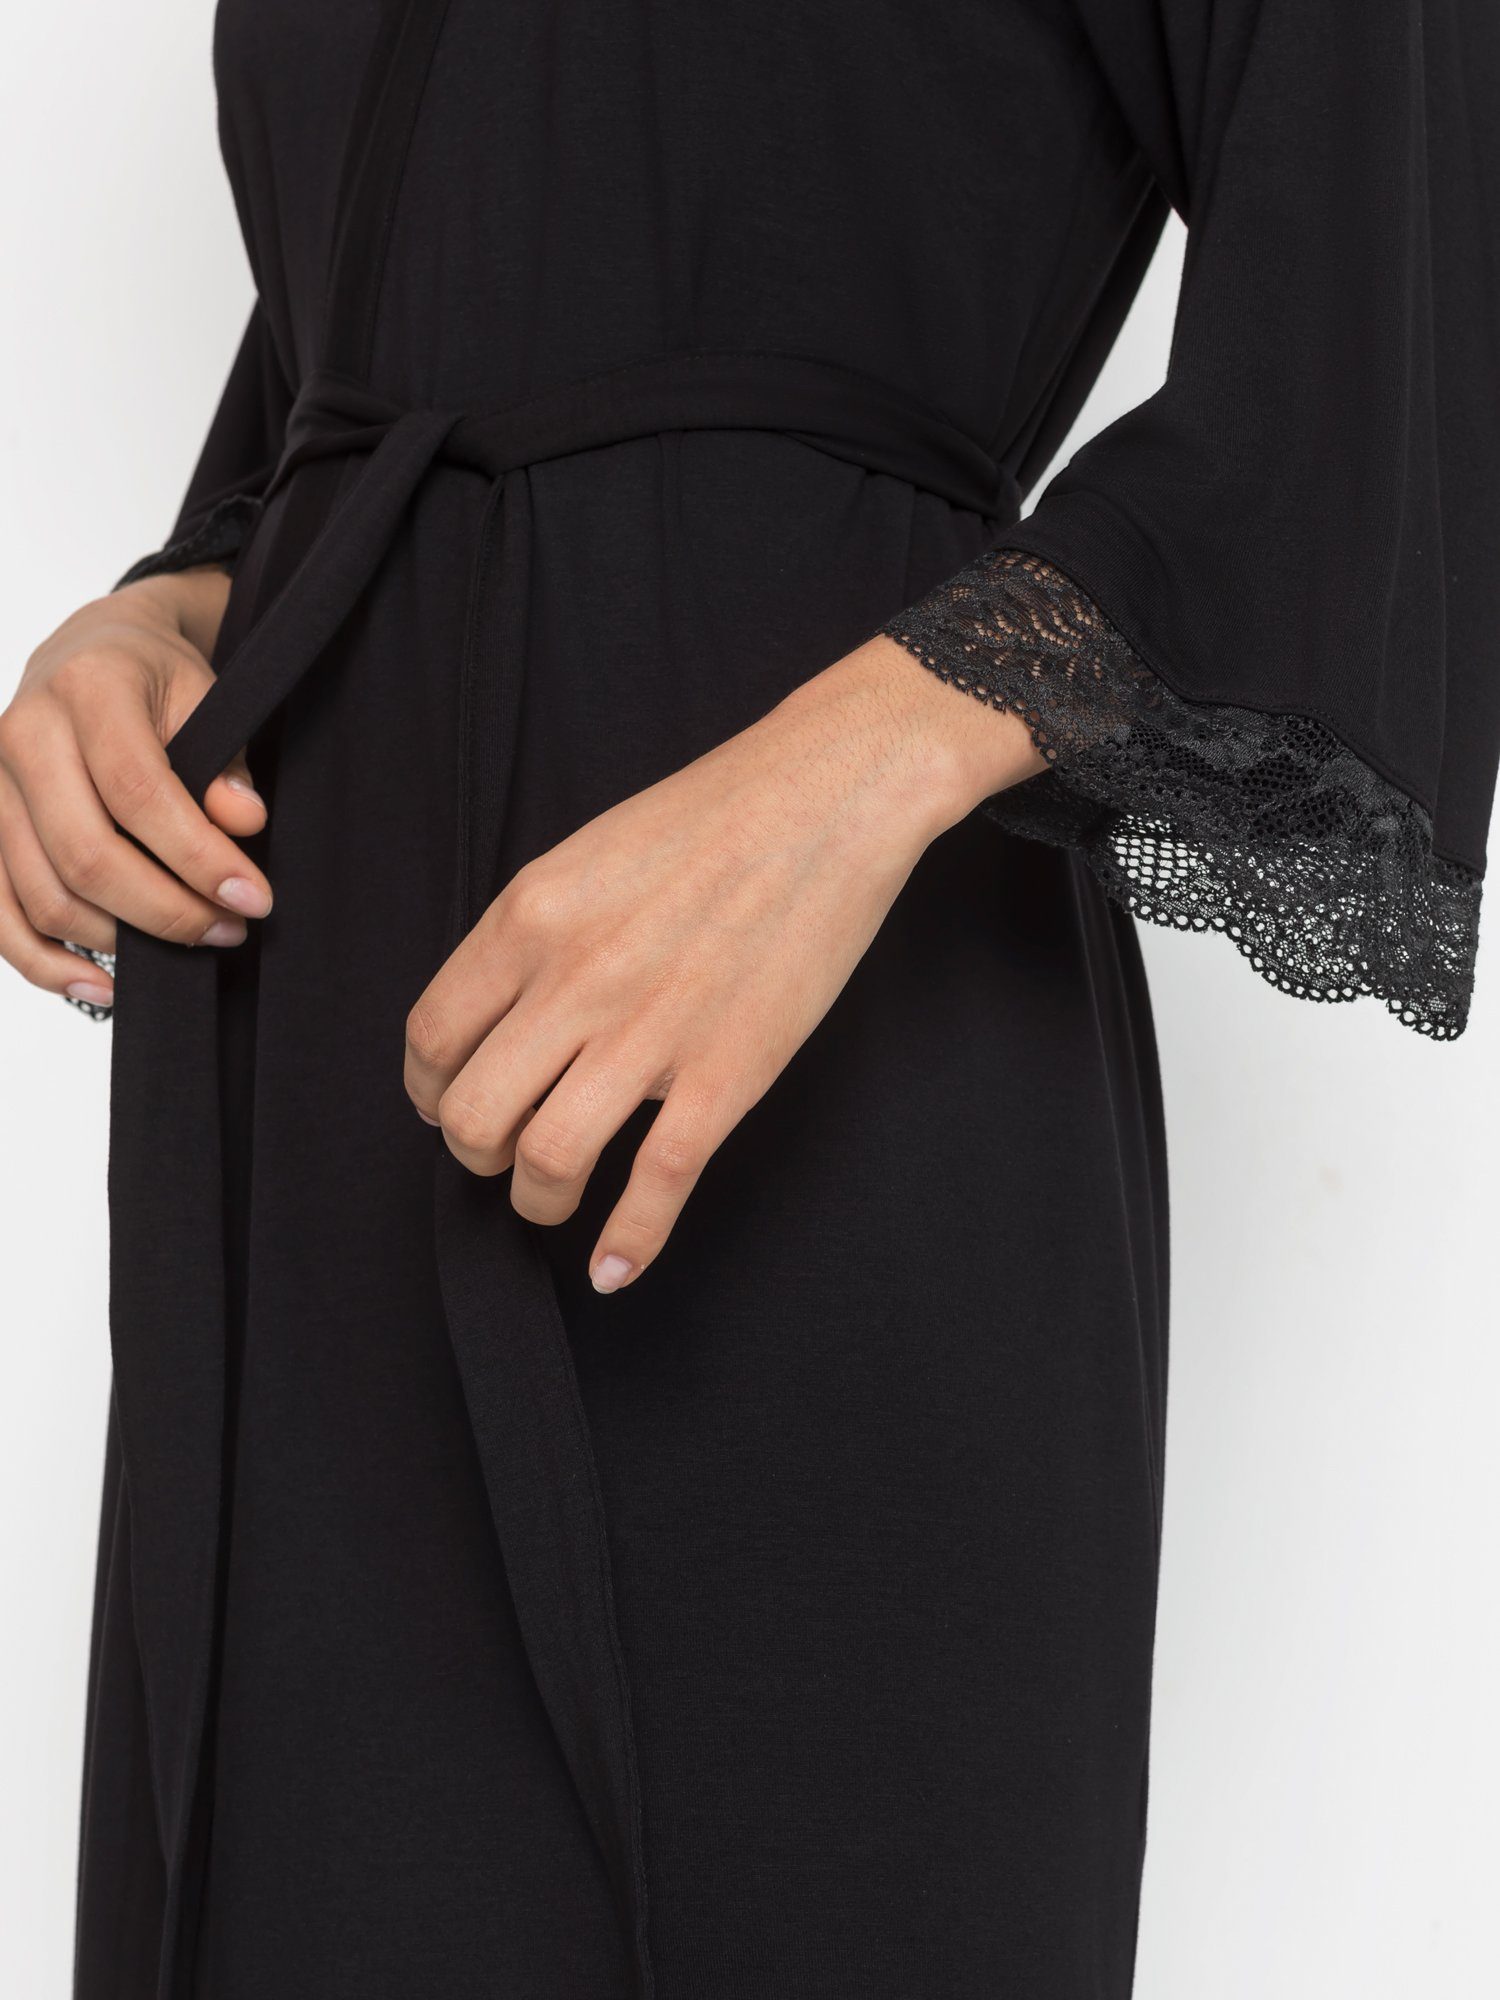 LASCANA Kimono, Midilänge, Spitzendetails Single-Jersey, schönen Kimono-Kragen, mit schwarz